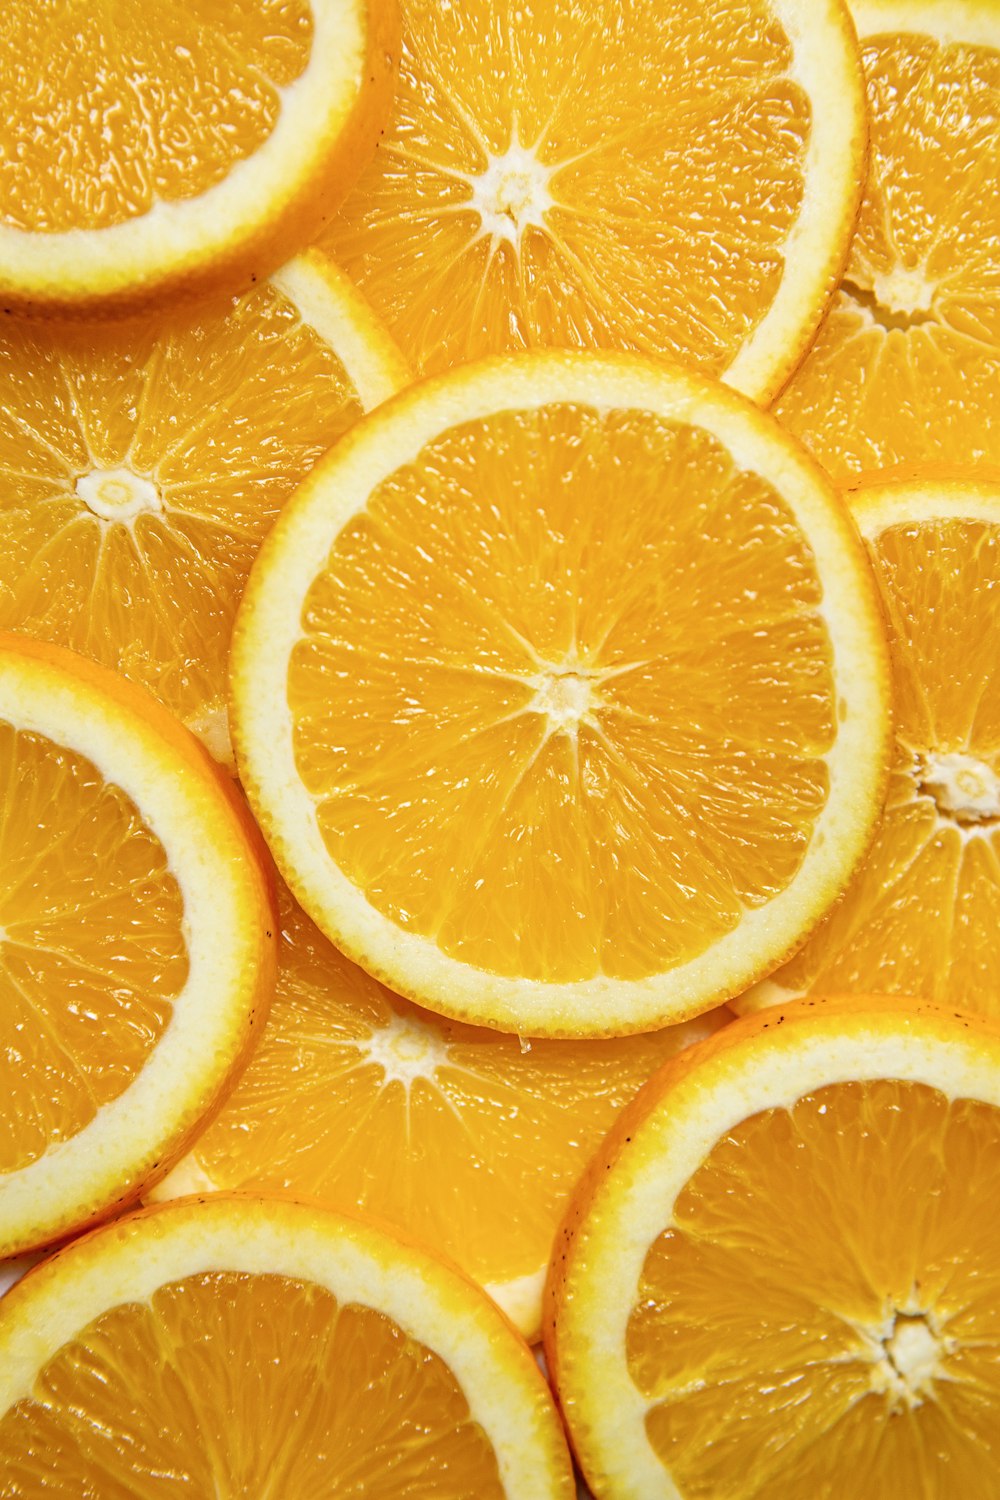 スライスしたオレンジ色の果実を白い陶板に